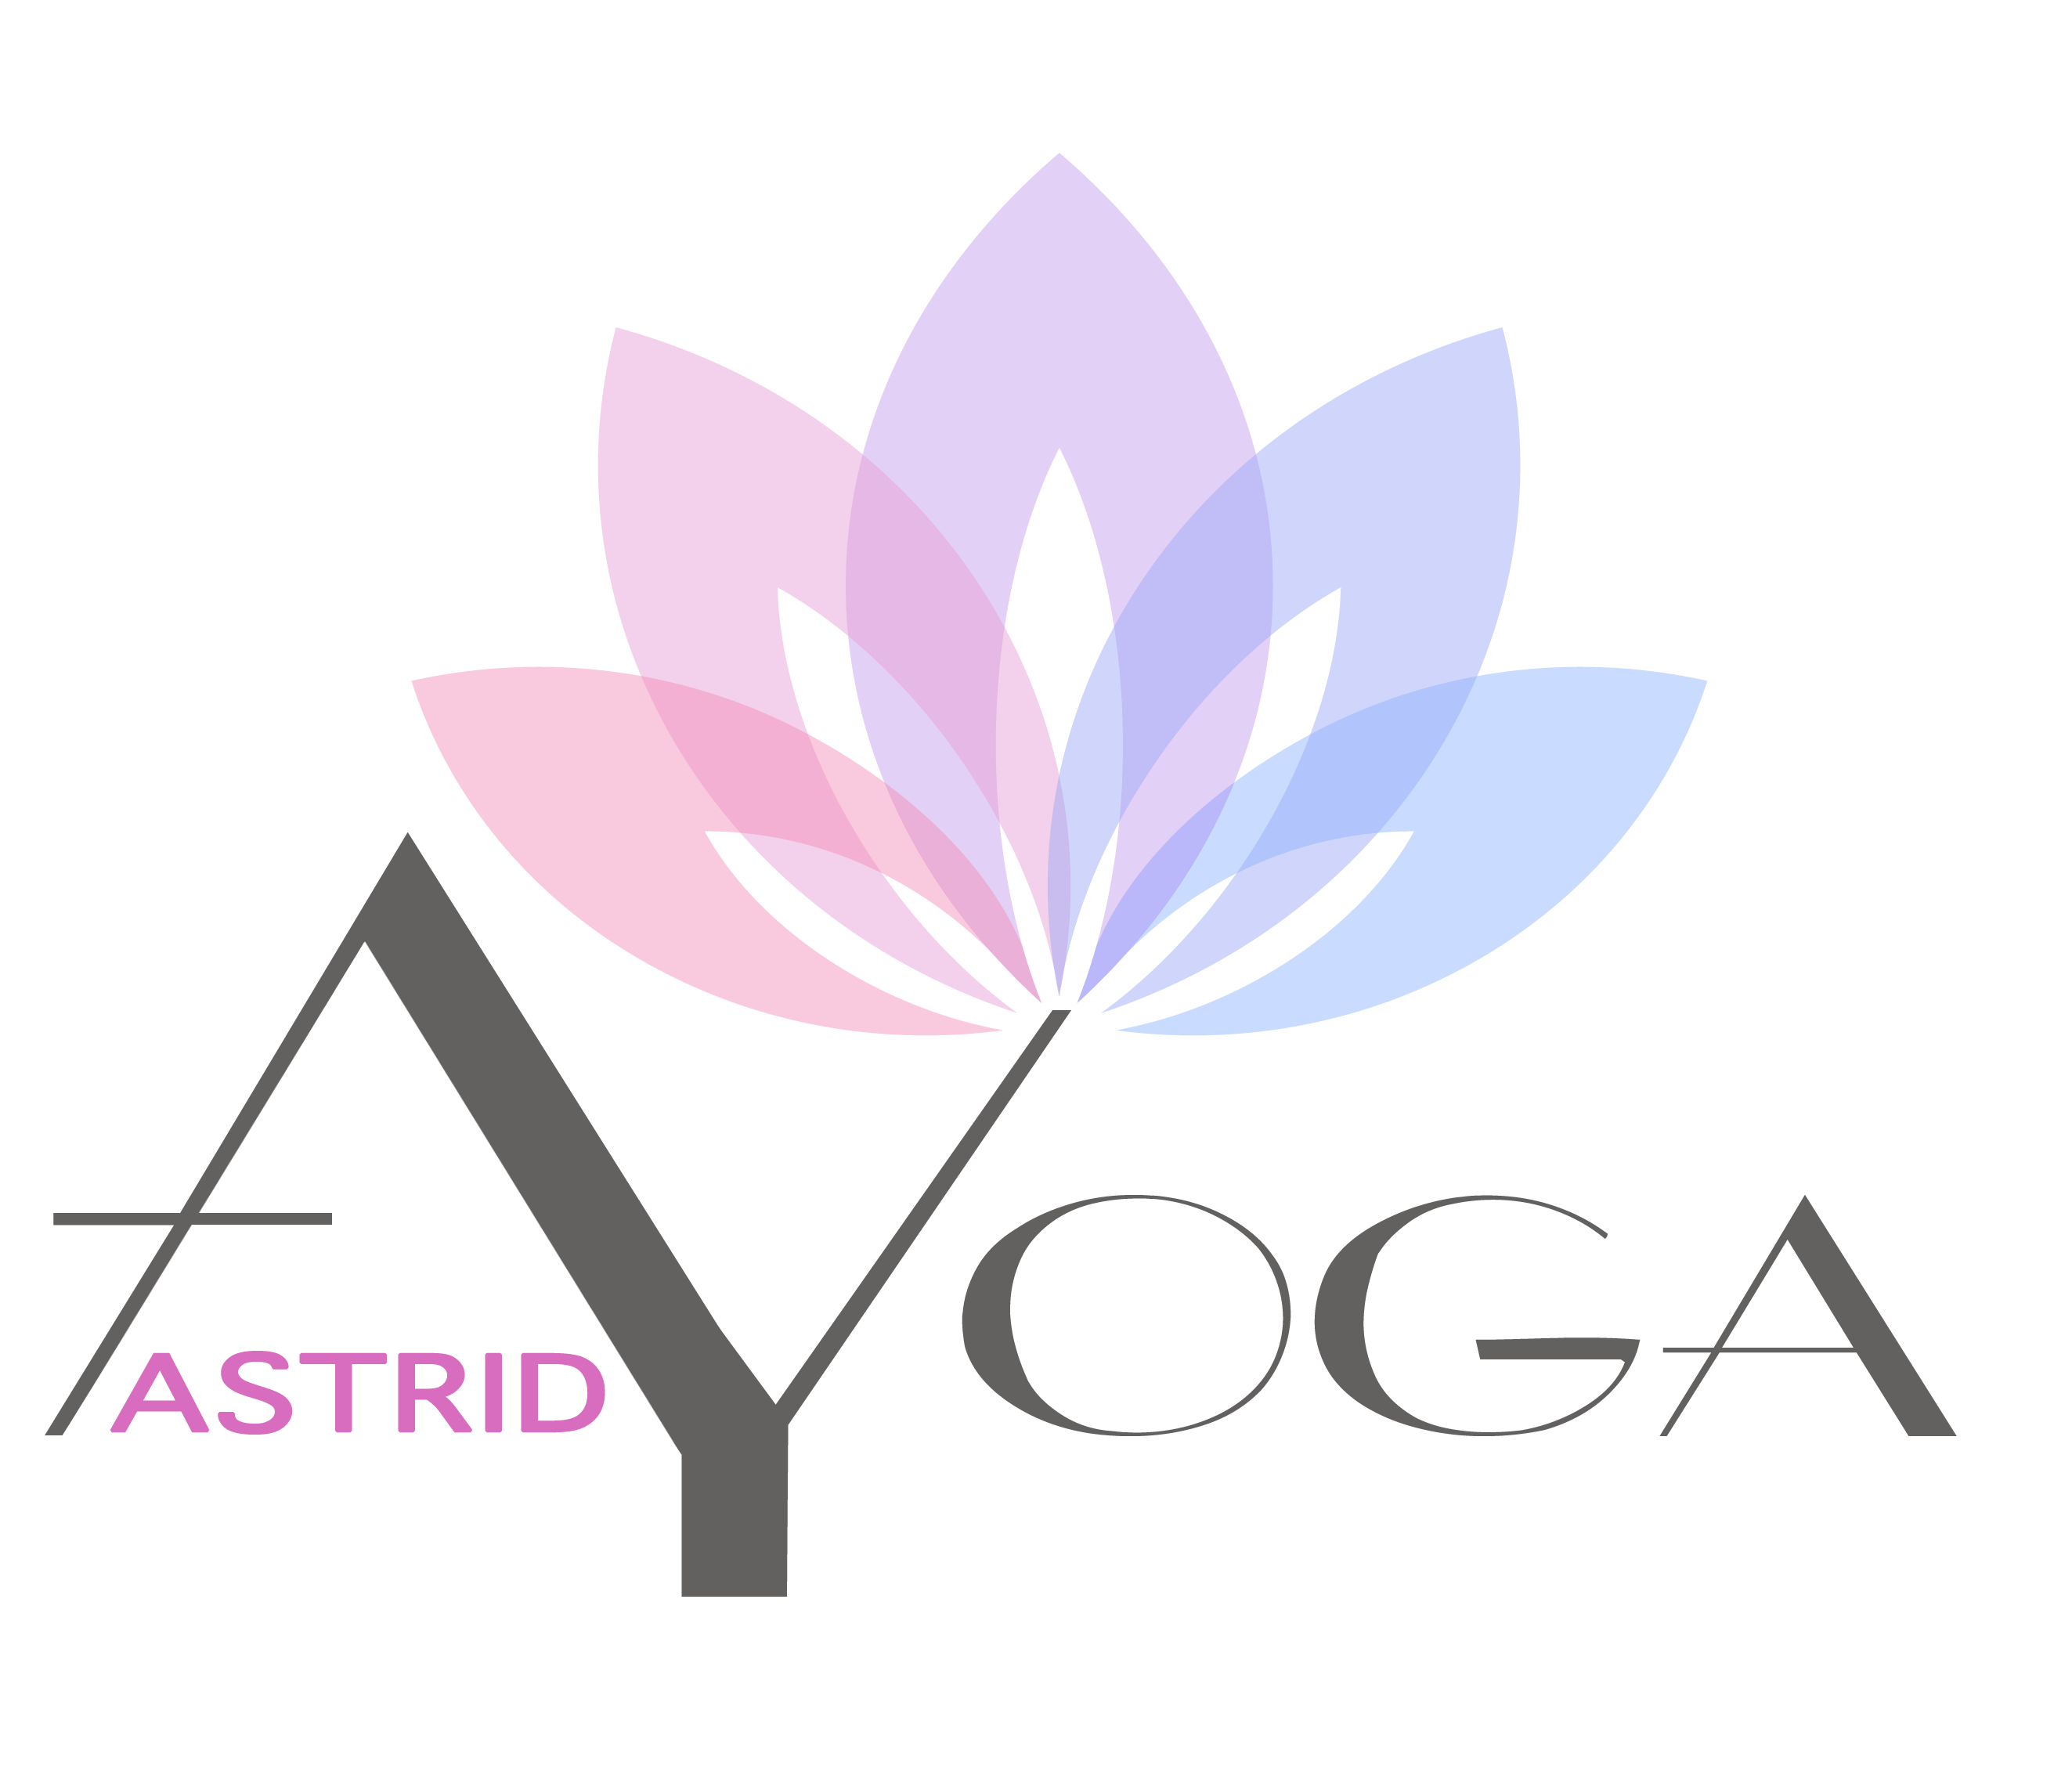 Astrid-Yoga